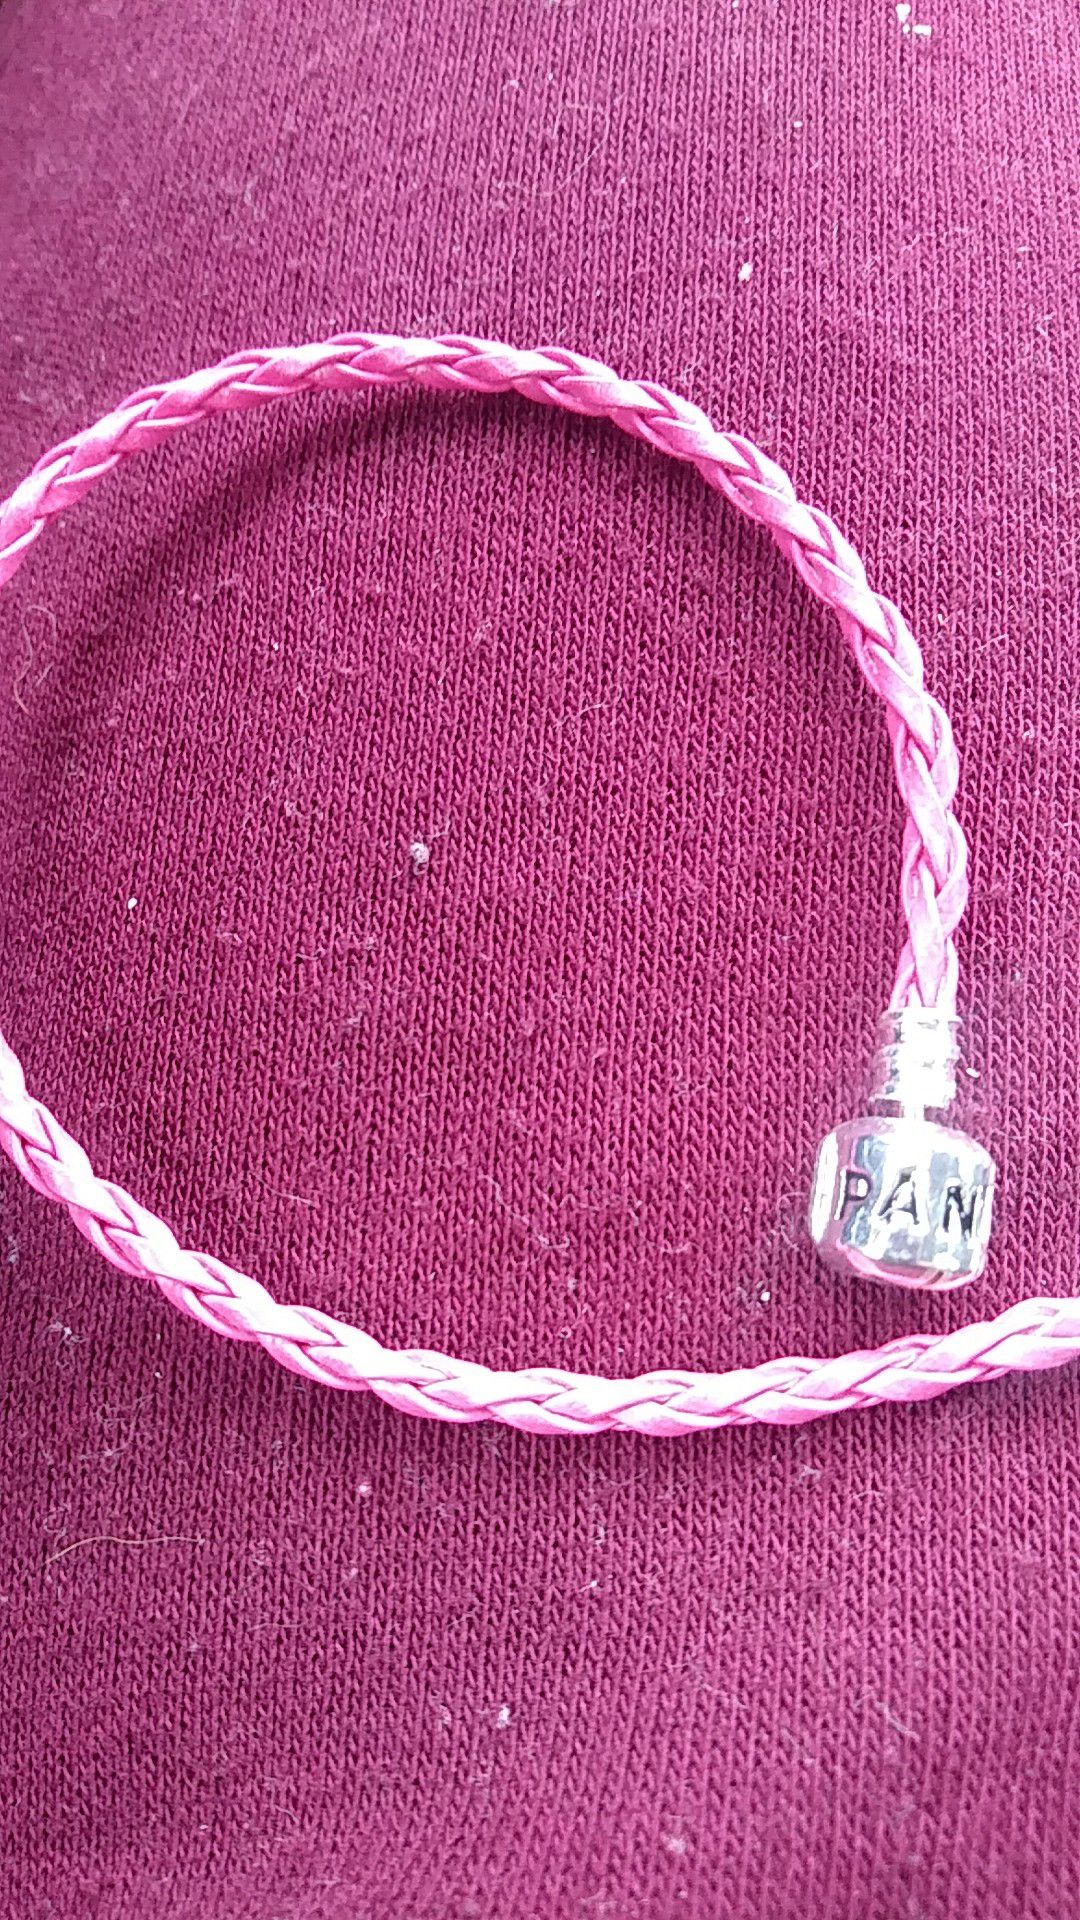 Pandora style pink leather bracelet